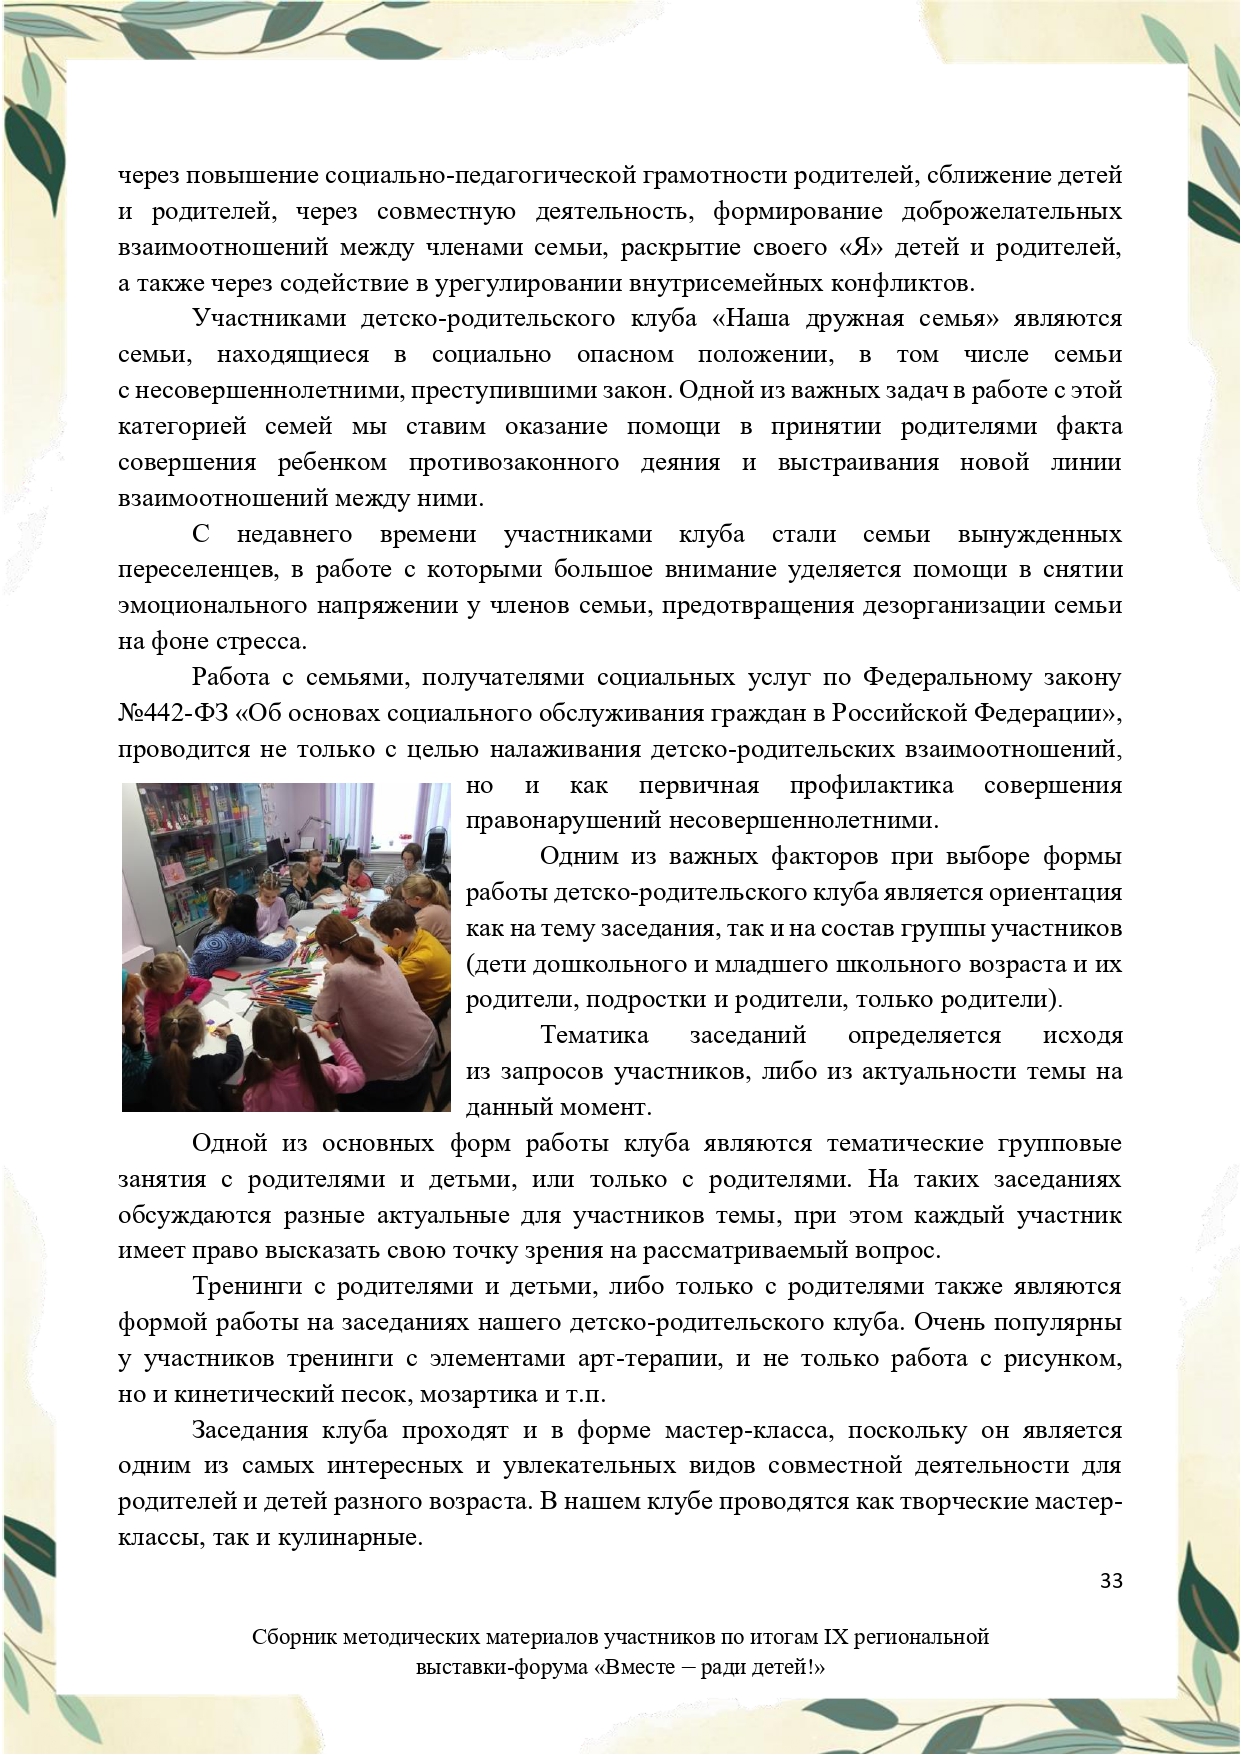 Sbornik_metodicheskikh_materialov_uchastnikov_IX_regionalnoy_vystavki-foruma_Vmeste__radi_detey_33__2023_page-0033